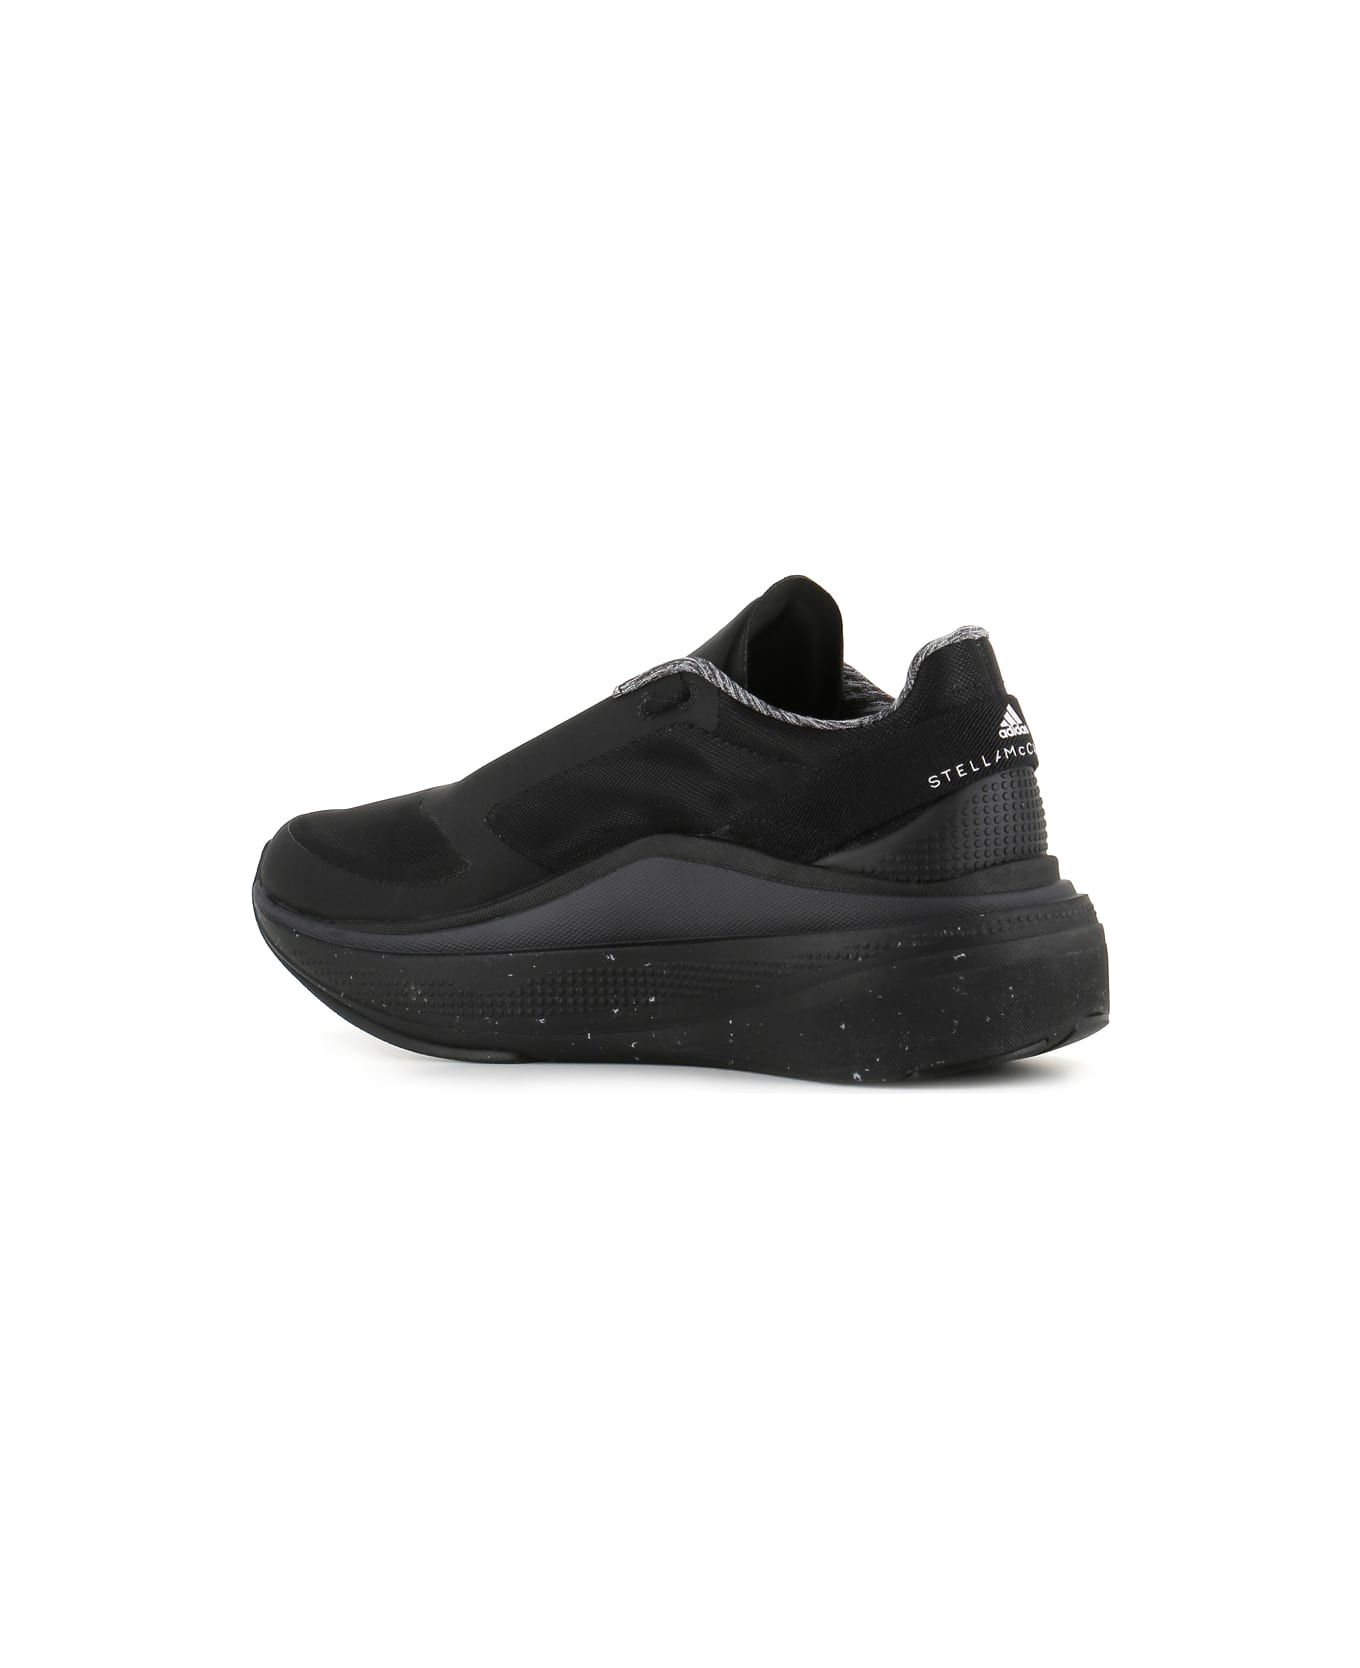 Adidas by Stella McCartney Sneaker Asmc Earthlight C - Black/Grey スニーカー